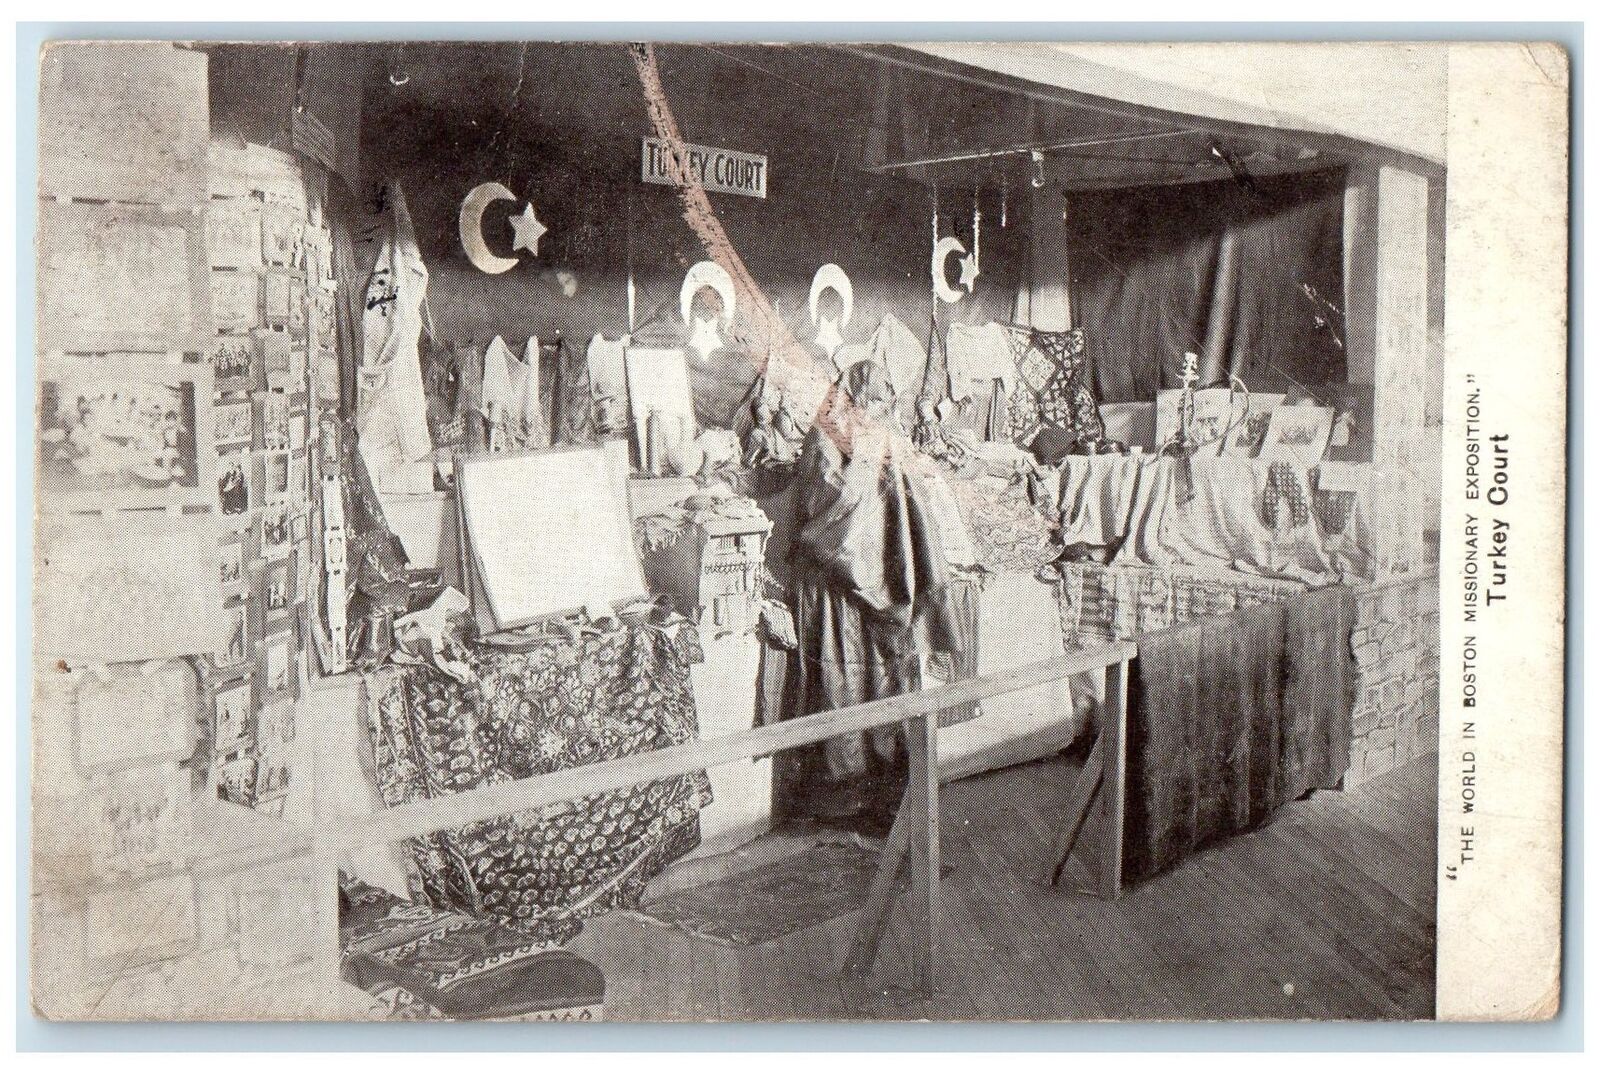 1911 Turkey Court Boston Missionary Exposition Boston Massachusetts MA Postcard